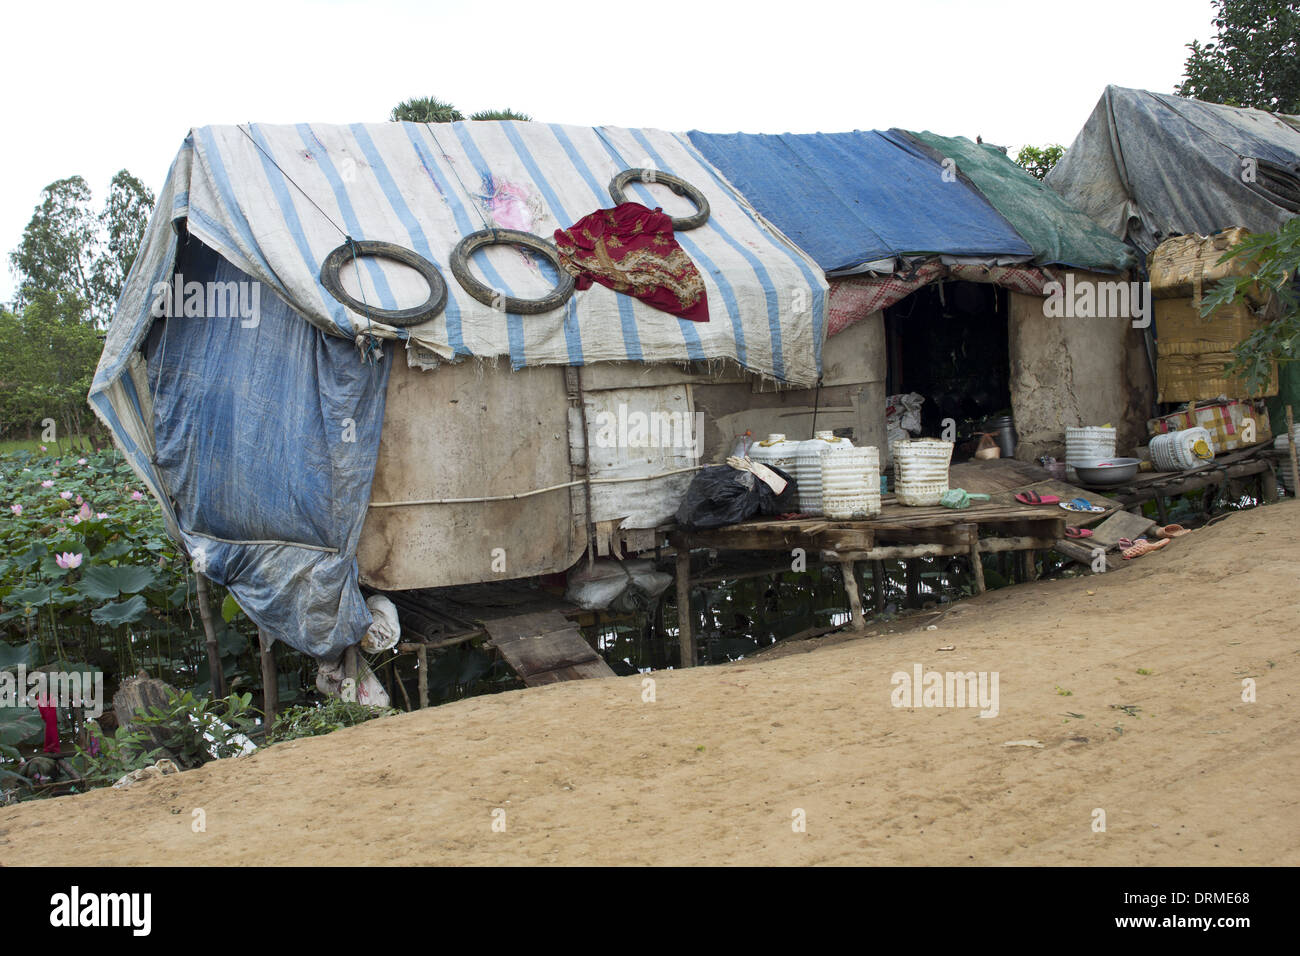 Molto poveri slum house, 11 persone vivono in essa Foto Stock